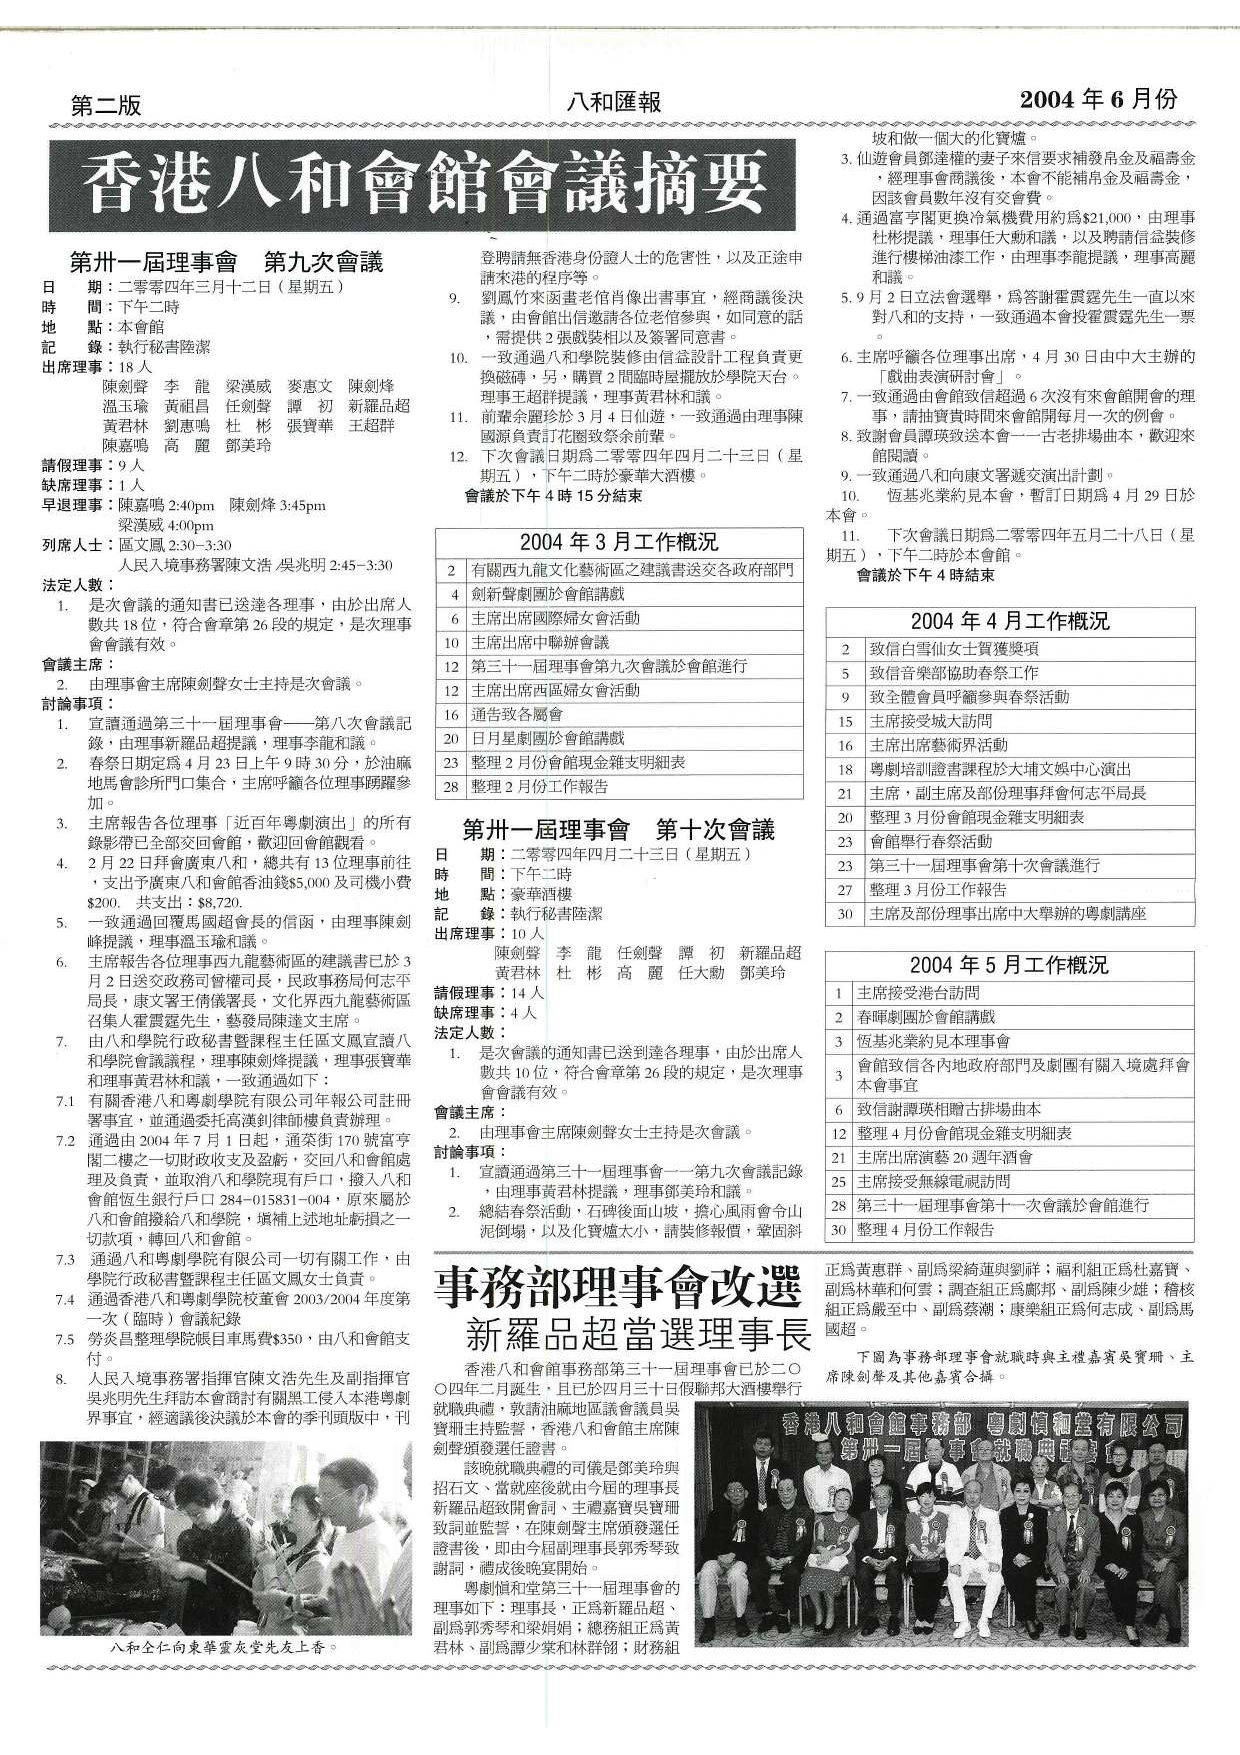 香港八和會館第三十一屆理事會第九至十次會議議程及辦公室報告（2004年3月至5月） | 事務部理事會改選 新羅品超當選理事長